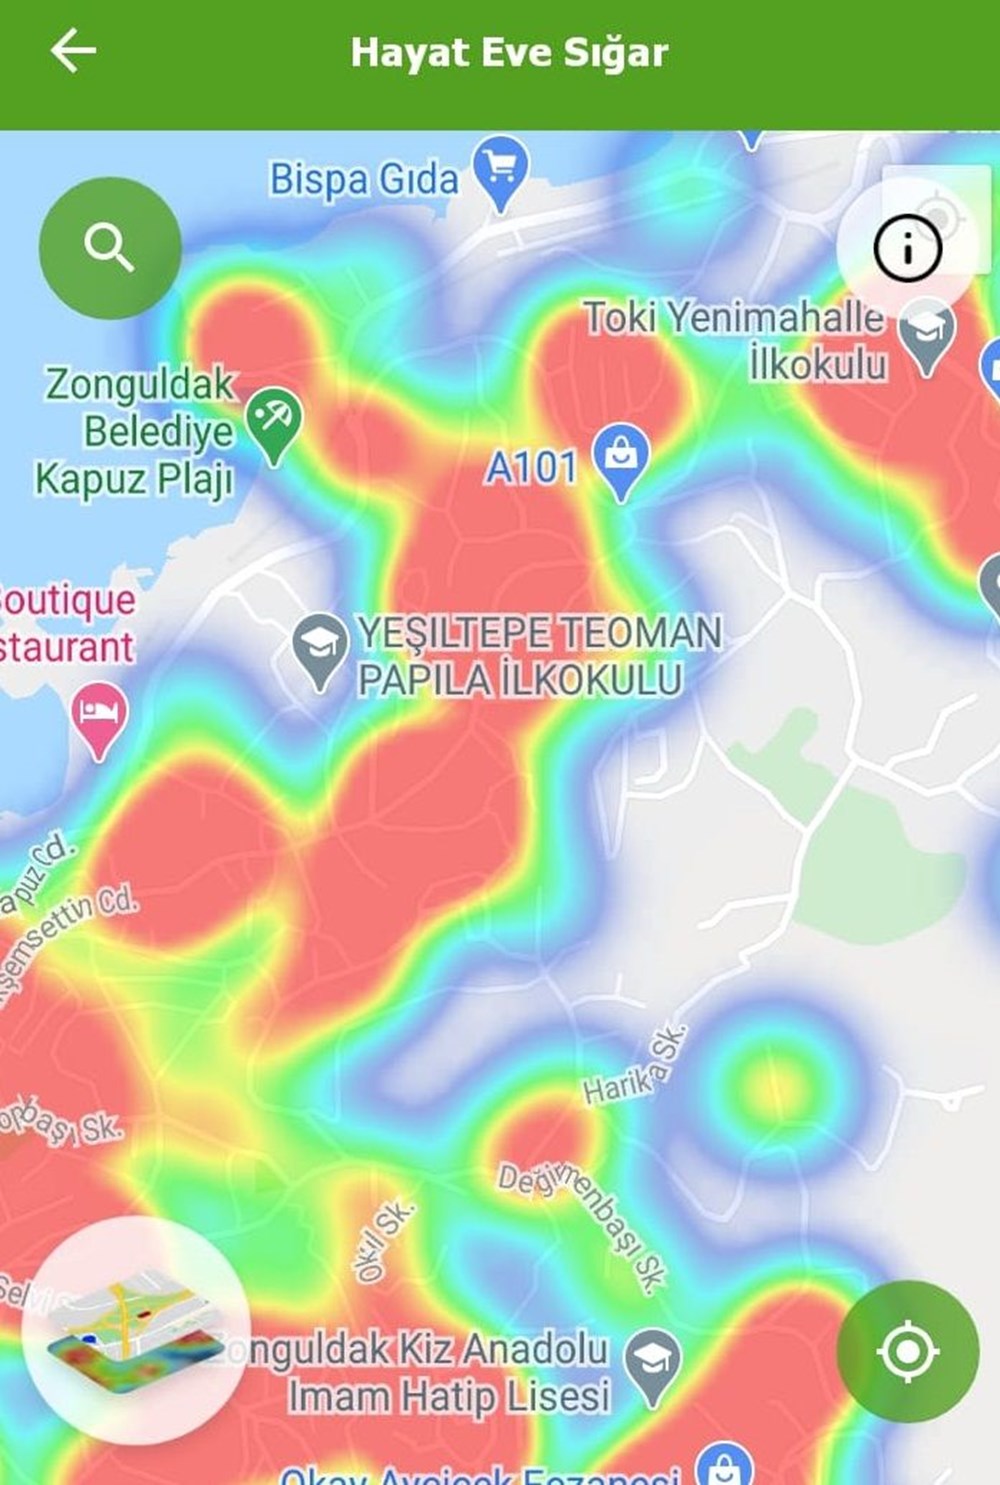 Zonguldak'ta corona virüs haritası kızardı - 4